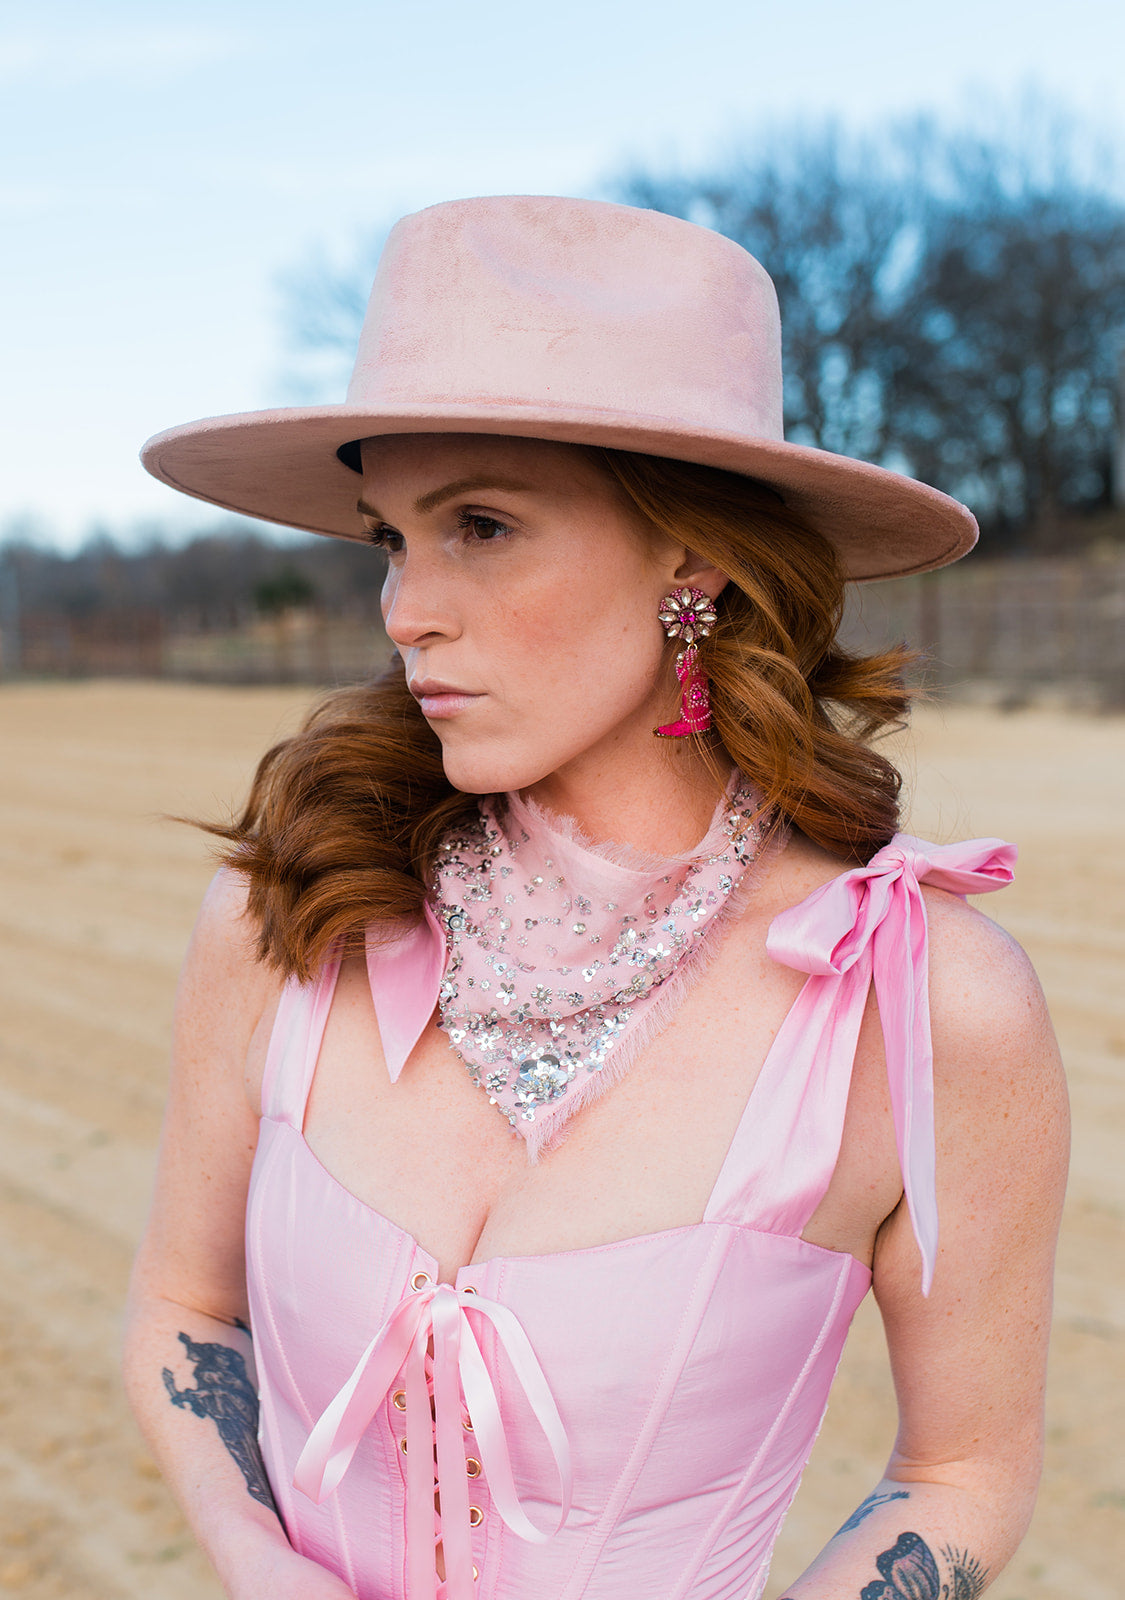 Exclusive Disco Cowgirl Drop Earrings - Barbie Pink by Mignonne Gavigan